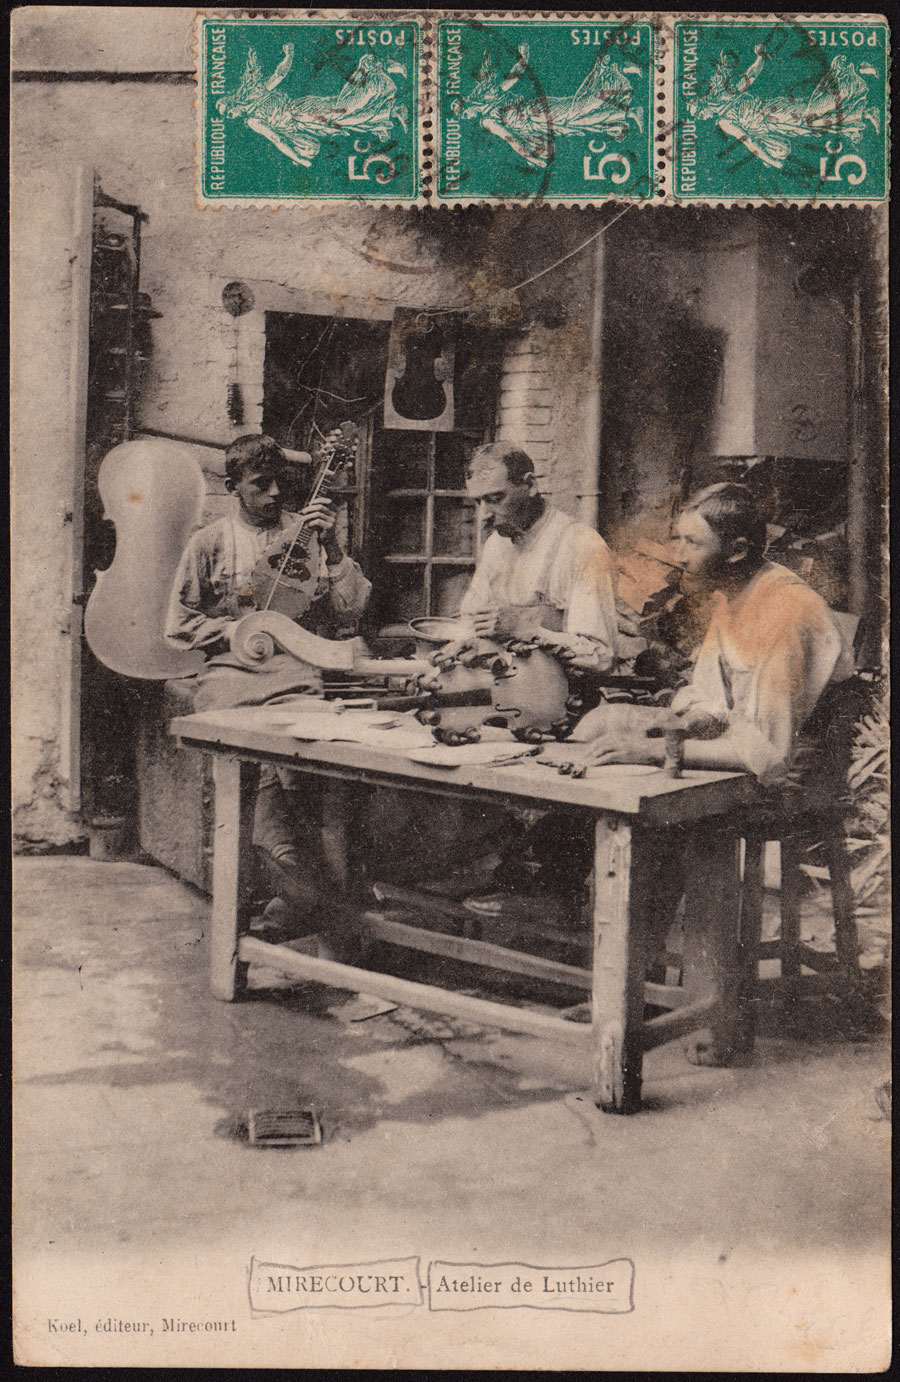 Une carte postale de Mirecourt mettant en scène un groupe de luthiers à l'ouvrage.